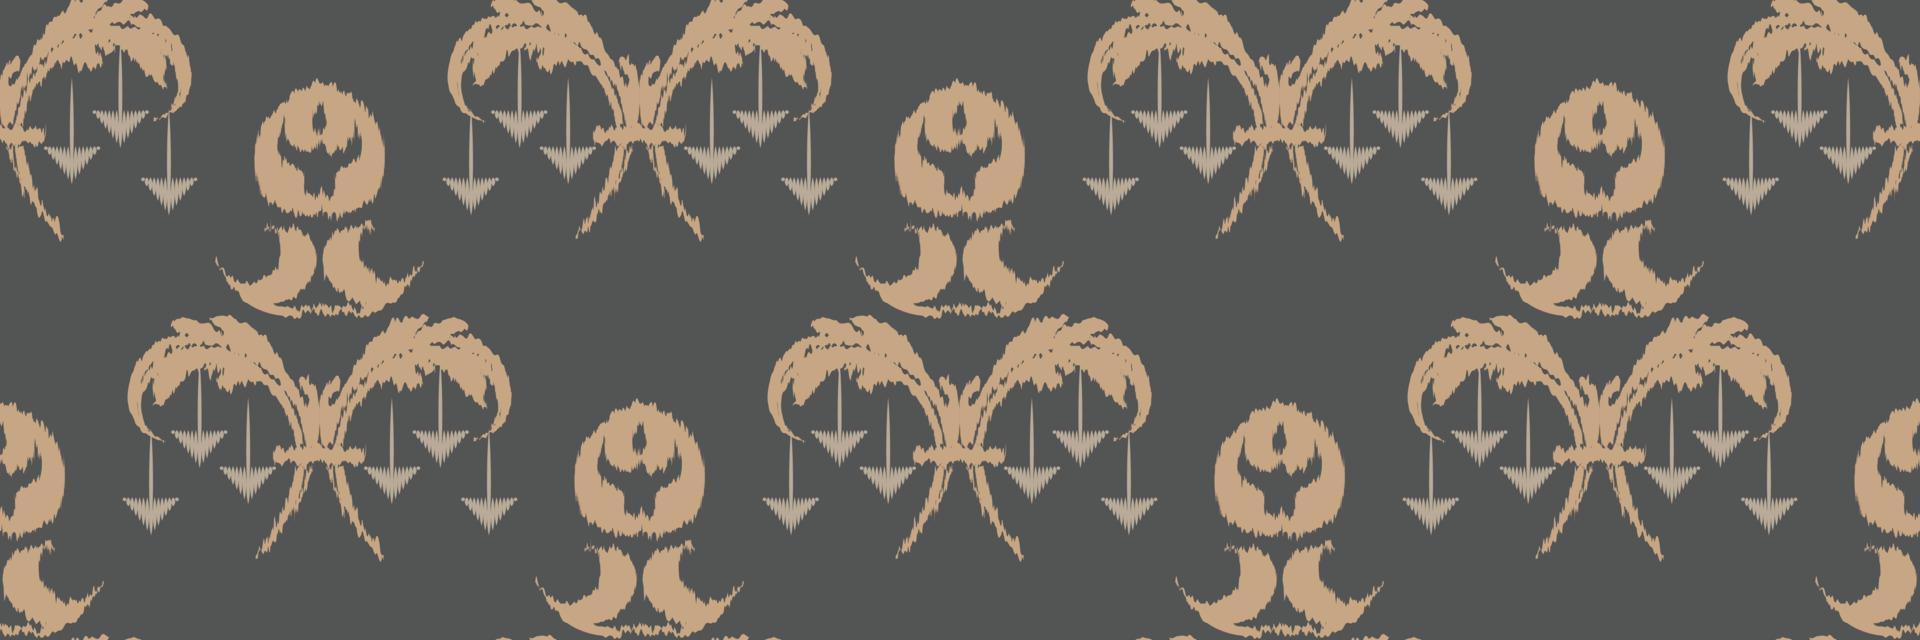 Ikat Damask Scandinavian embroidery, ikat seamless tribal color, Fashion pattern Digital textile Asian Design ancient art for Prints Fabric saree Mughal Swaths texture Kurti Kurtis Kurtas vector